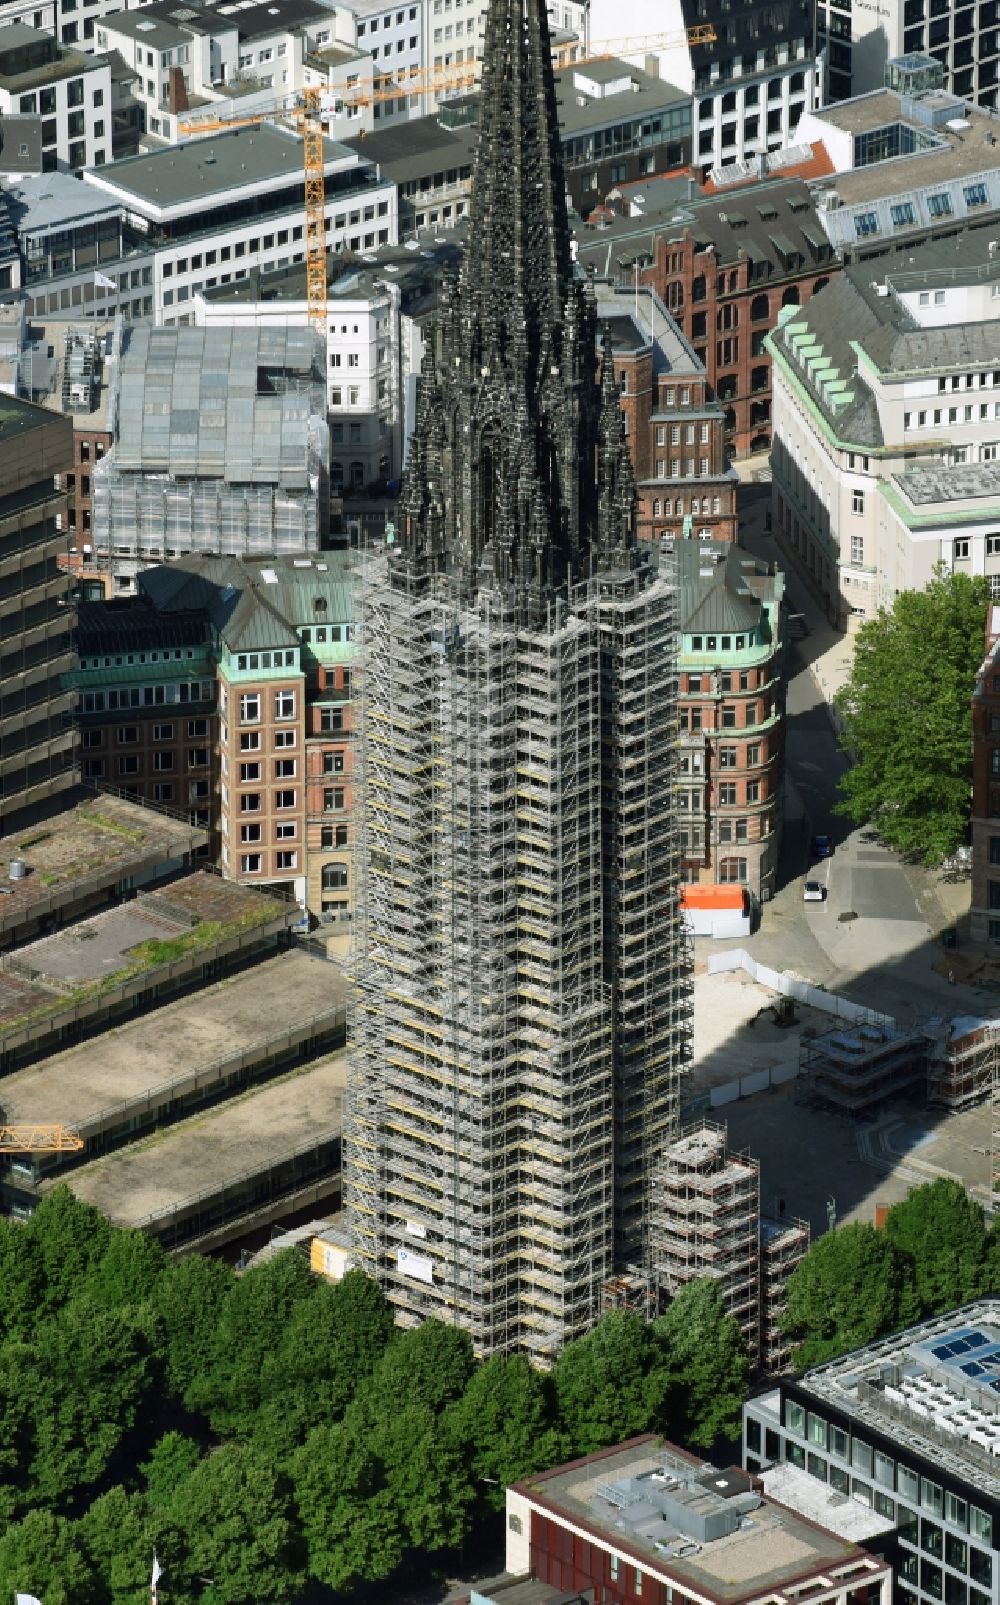 Luftaufnahme Hamburg - Kirchenturm am Kirchengebäude - Mahnmal St. Nikolai an der Willy-Brandt-Straße in Hamburg, Deutschland